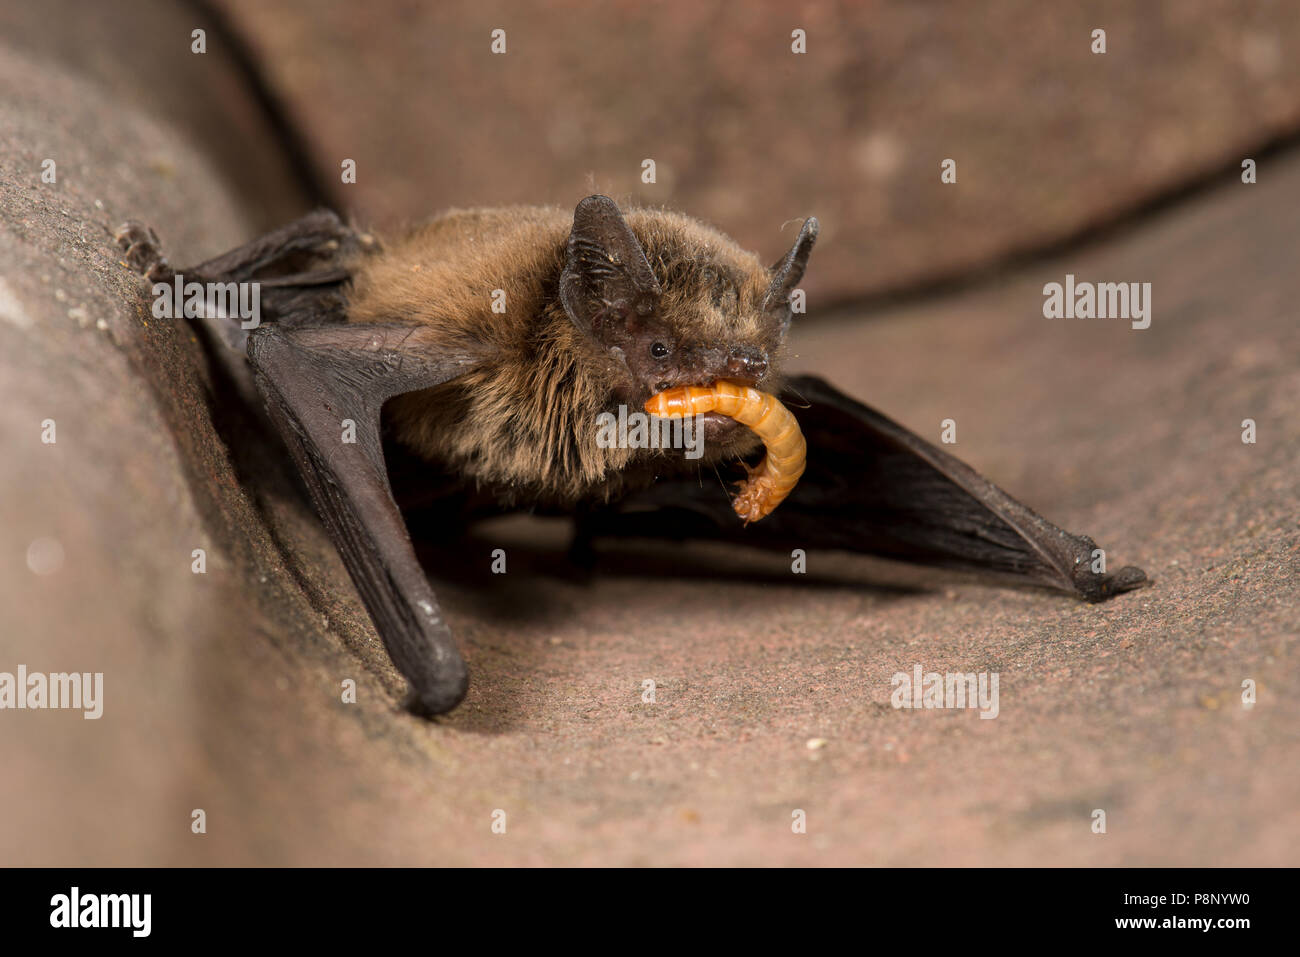 Pipistrelle común está siendo alimentado con un mealworm por un humano en un centro de atención bat Foto de stock